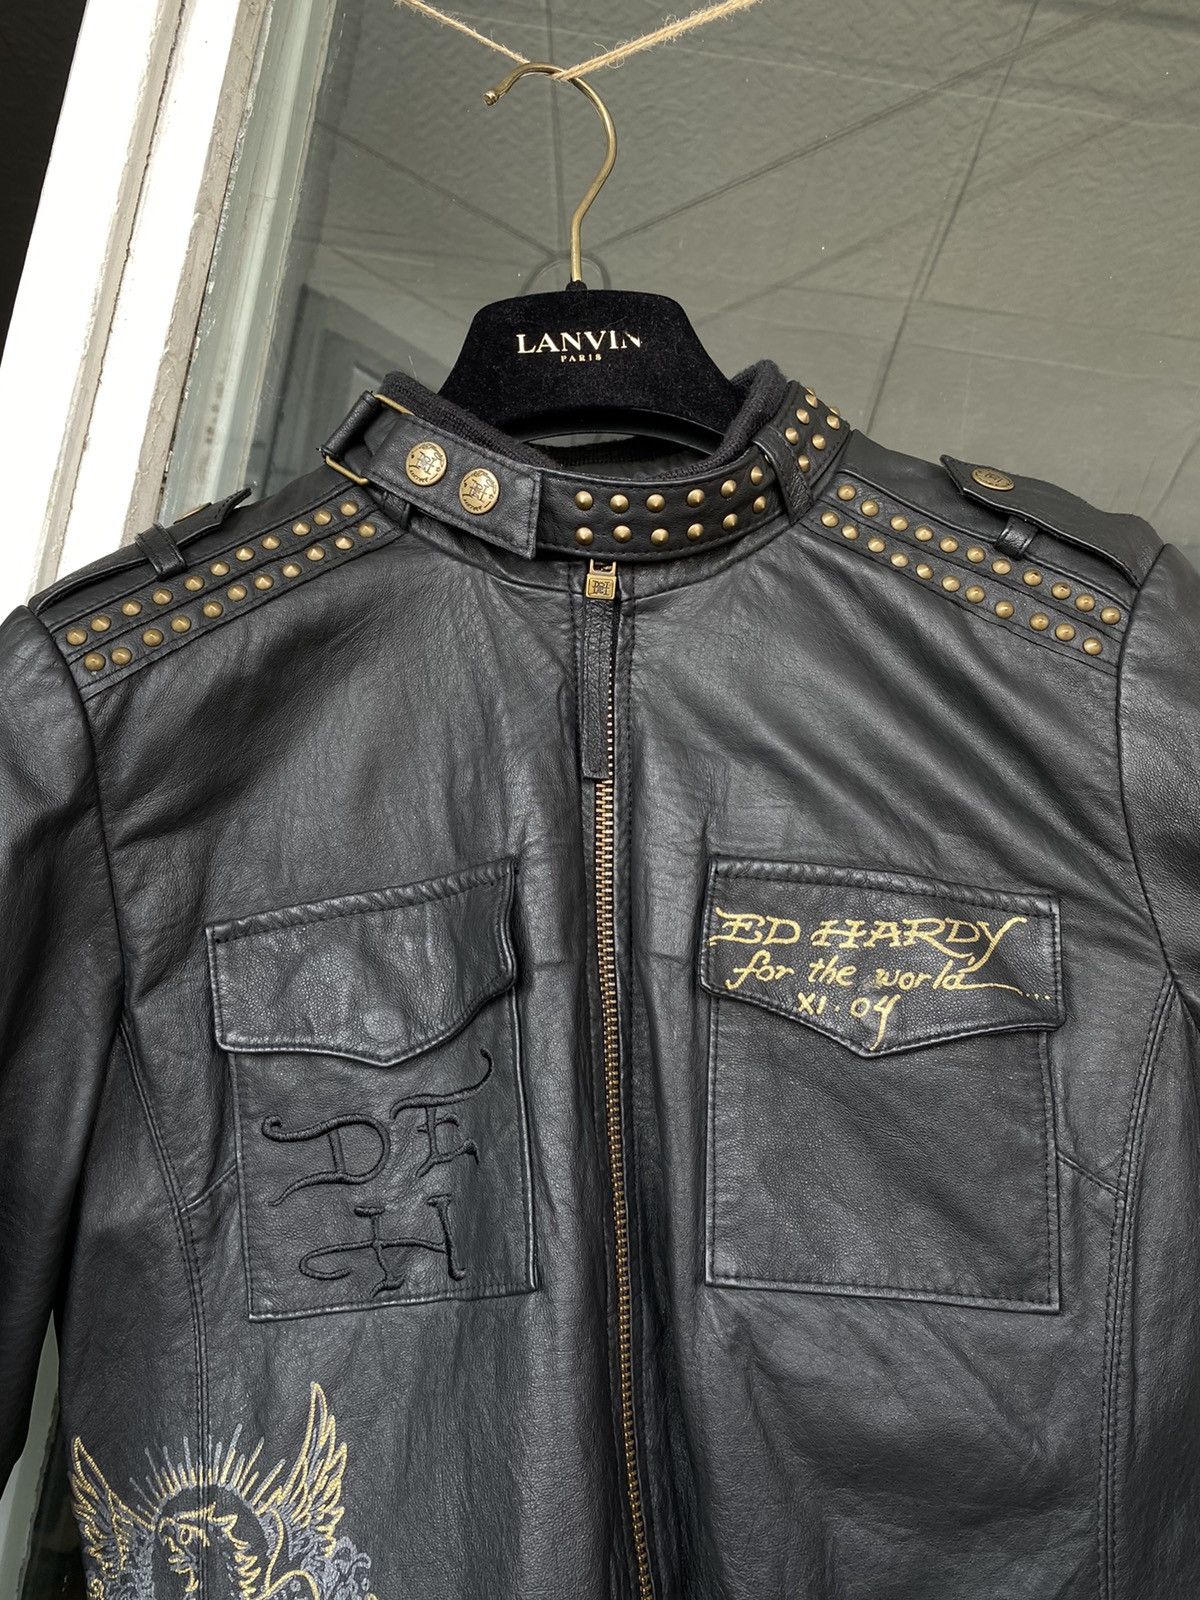 Vintage Vintage Ed hardy Jacket Leather motorcycle bomber Size US S / EU 44-46 / 1 - 9 Thumbnail